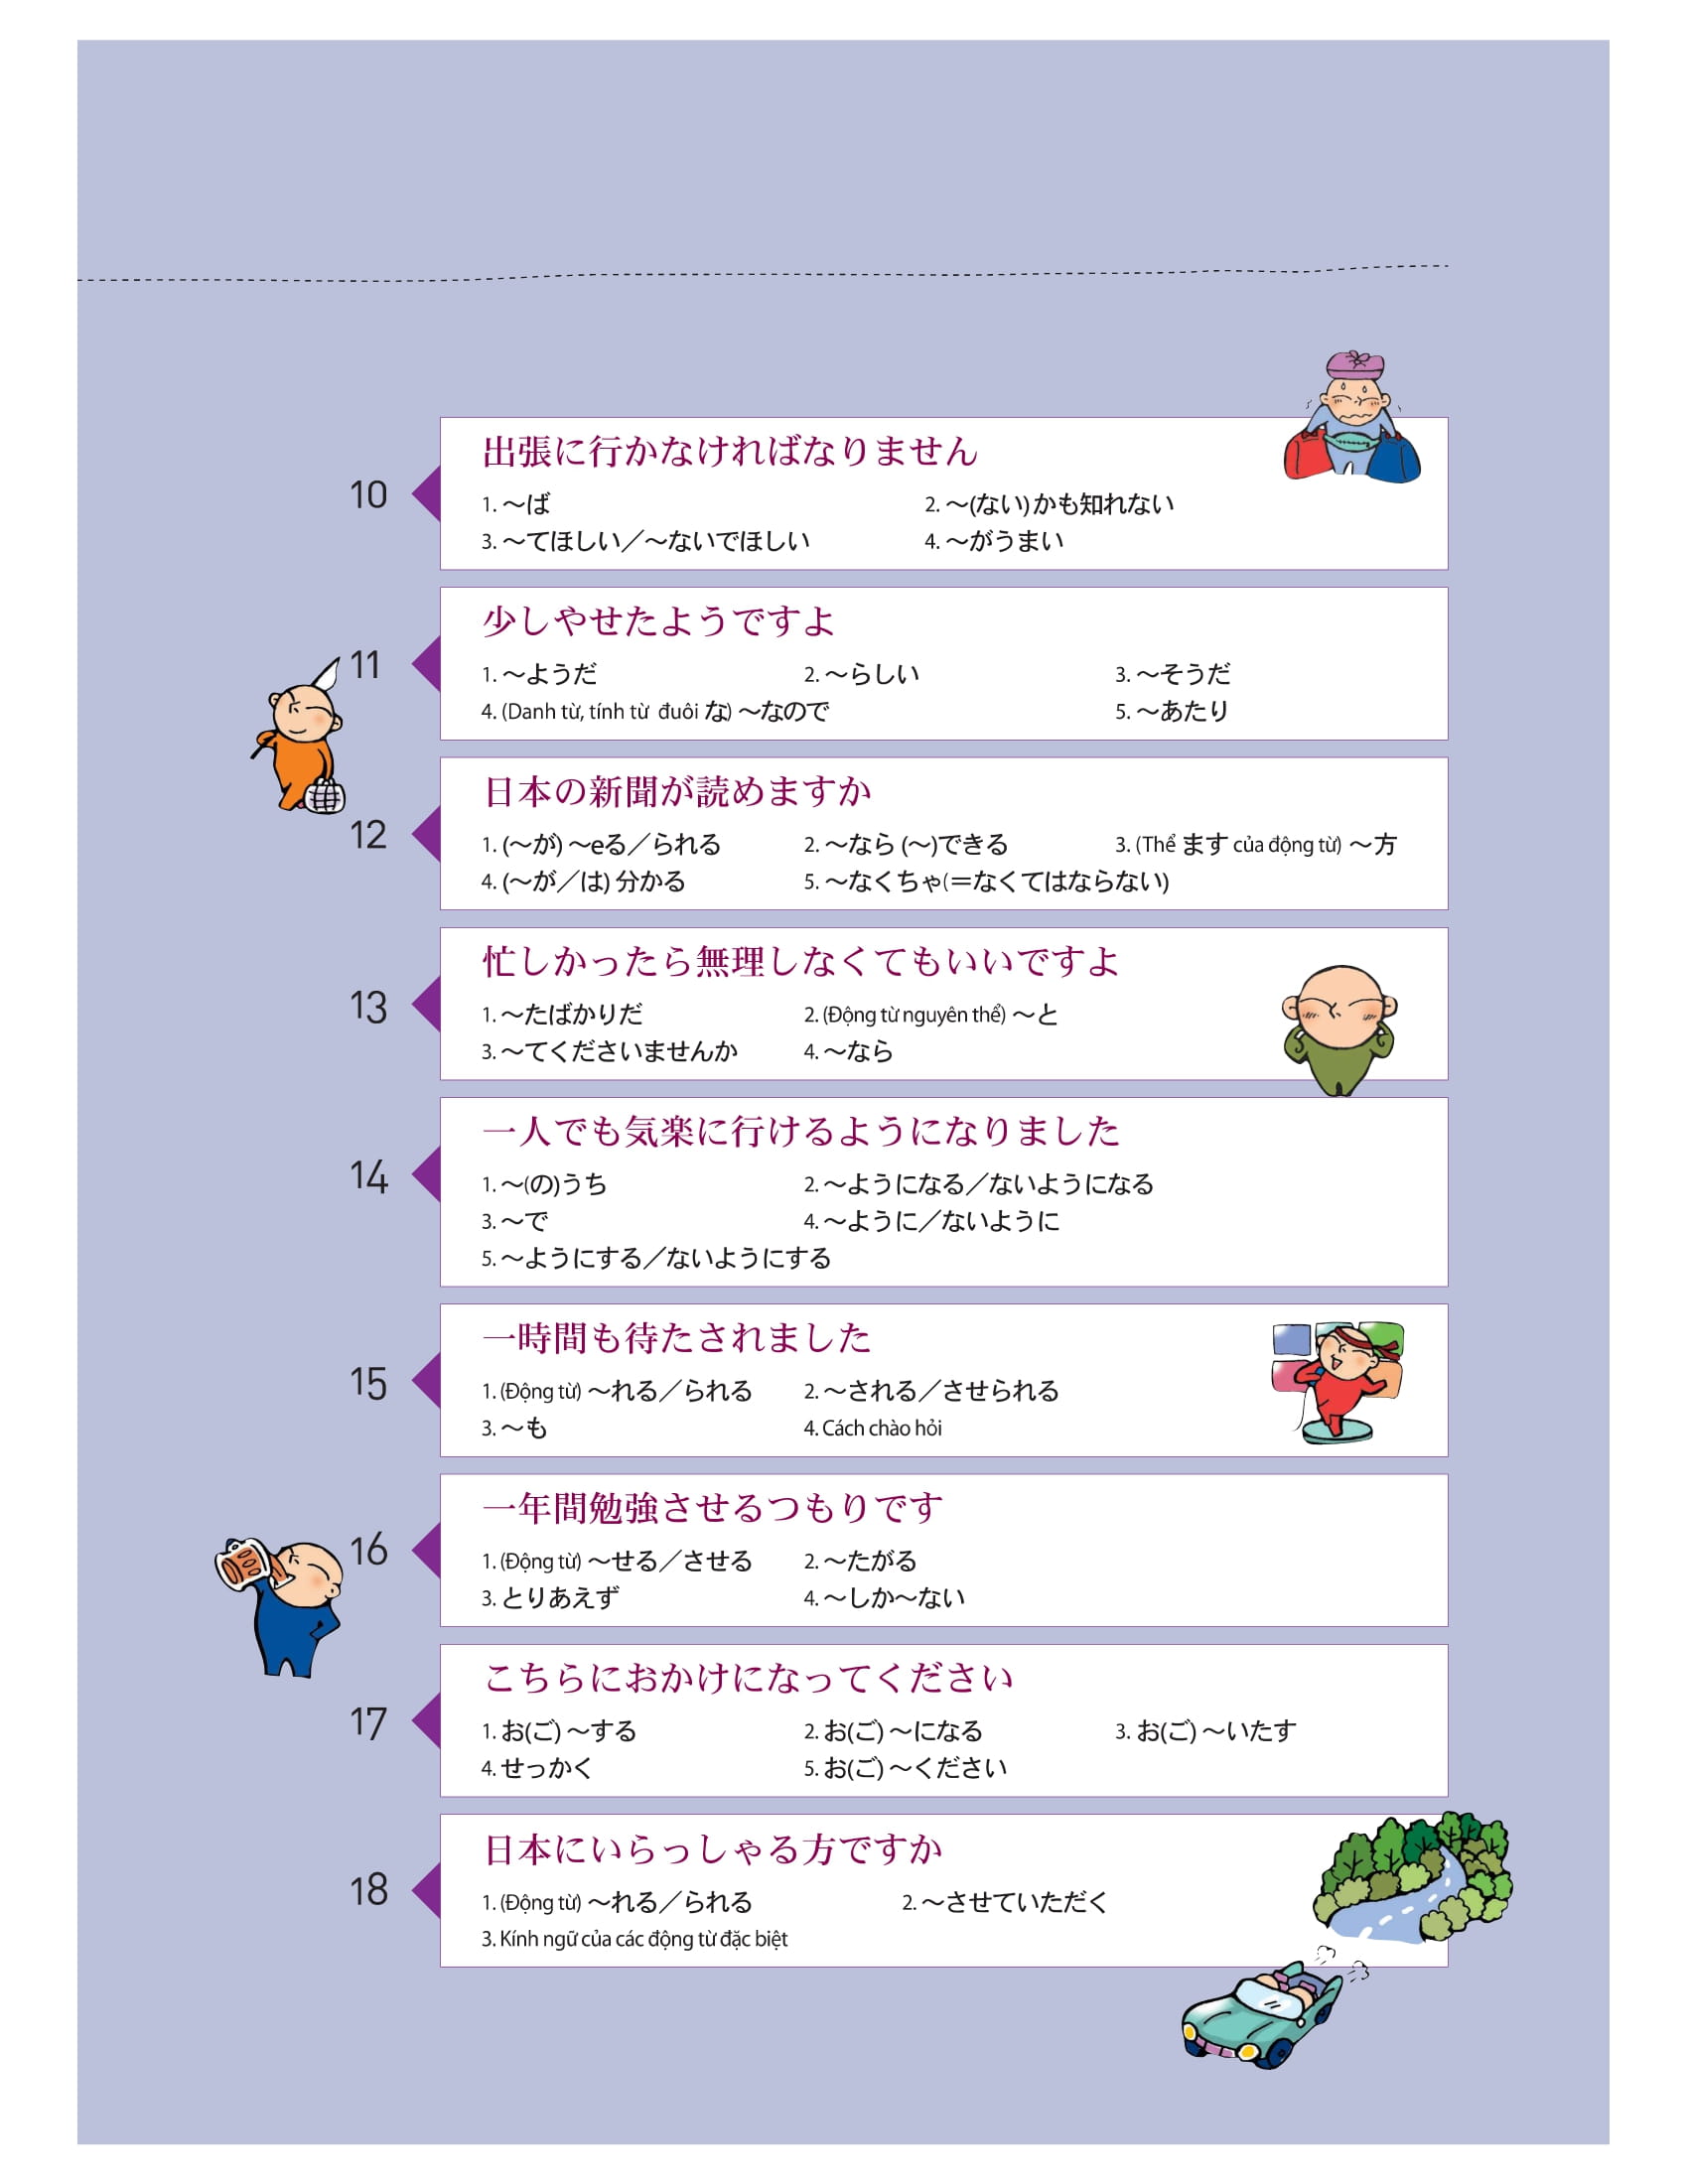 Tiếng Nhật Thật Đơn Giản Trong Giao Tiếp Hàng Ngày - Sơ Cấp 2 PDF